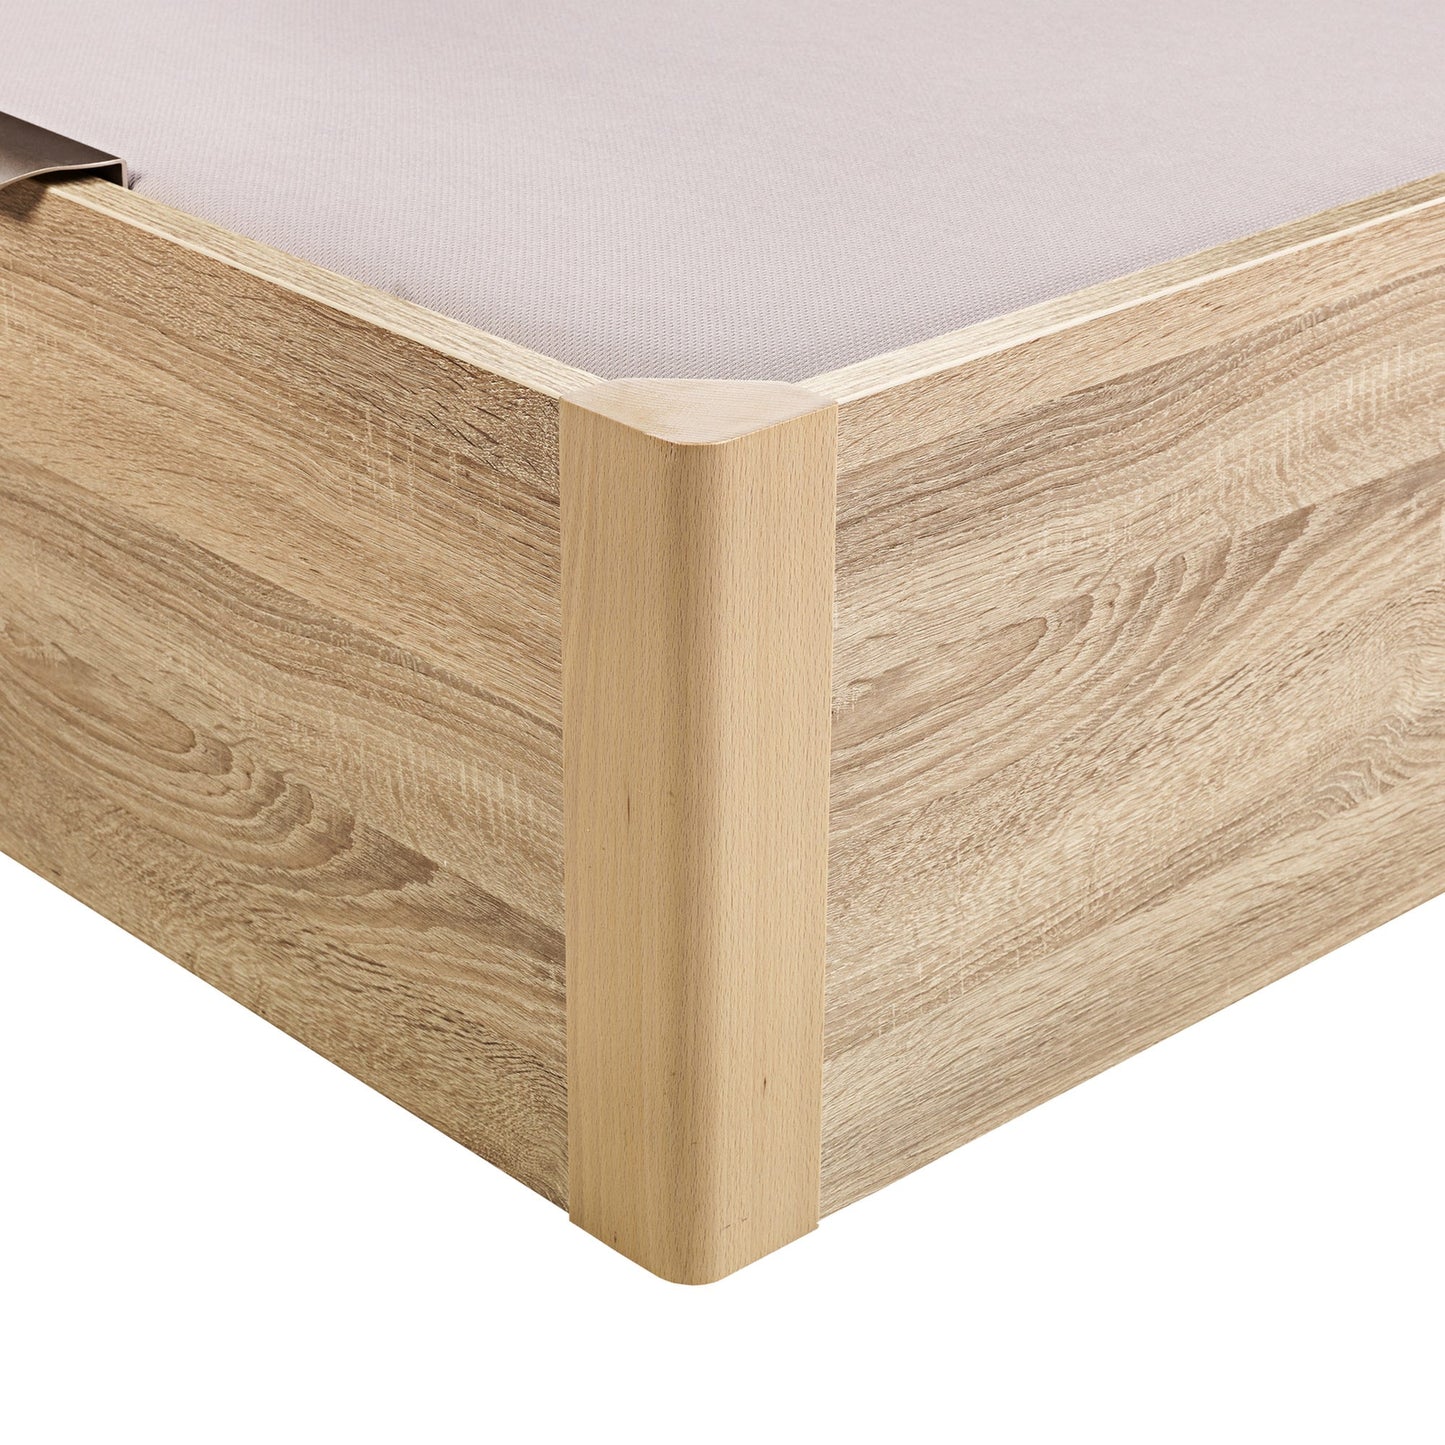 Canapé abatible de madera juvenil de color natural - DESIGN JUV - 90x200